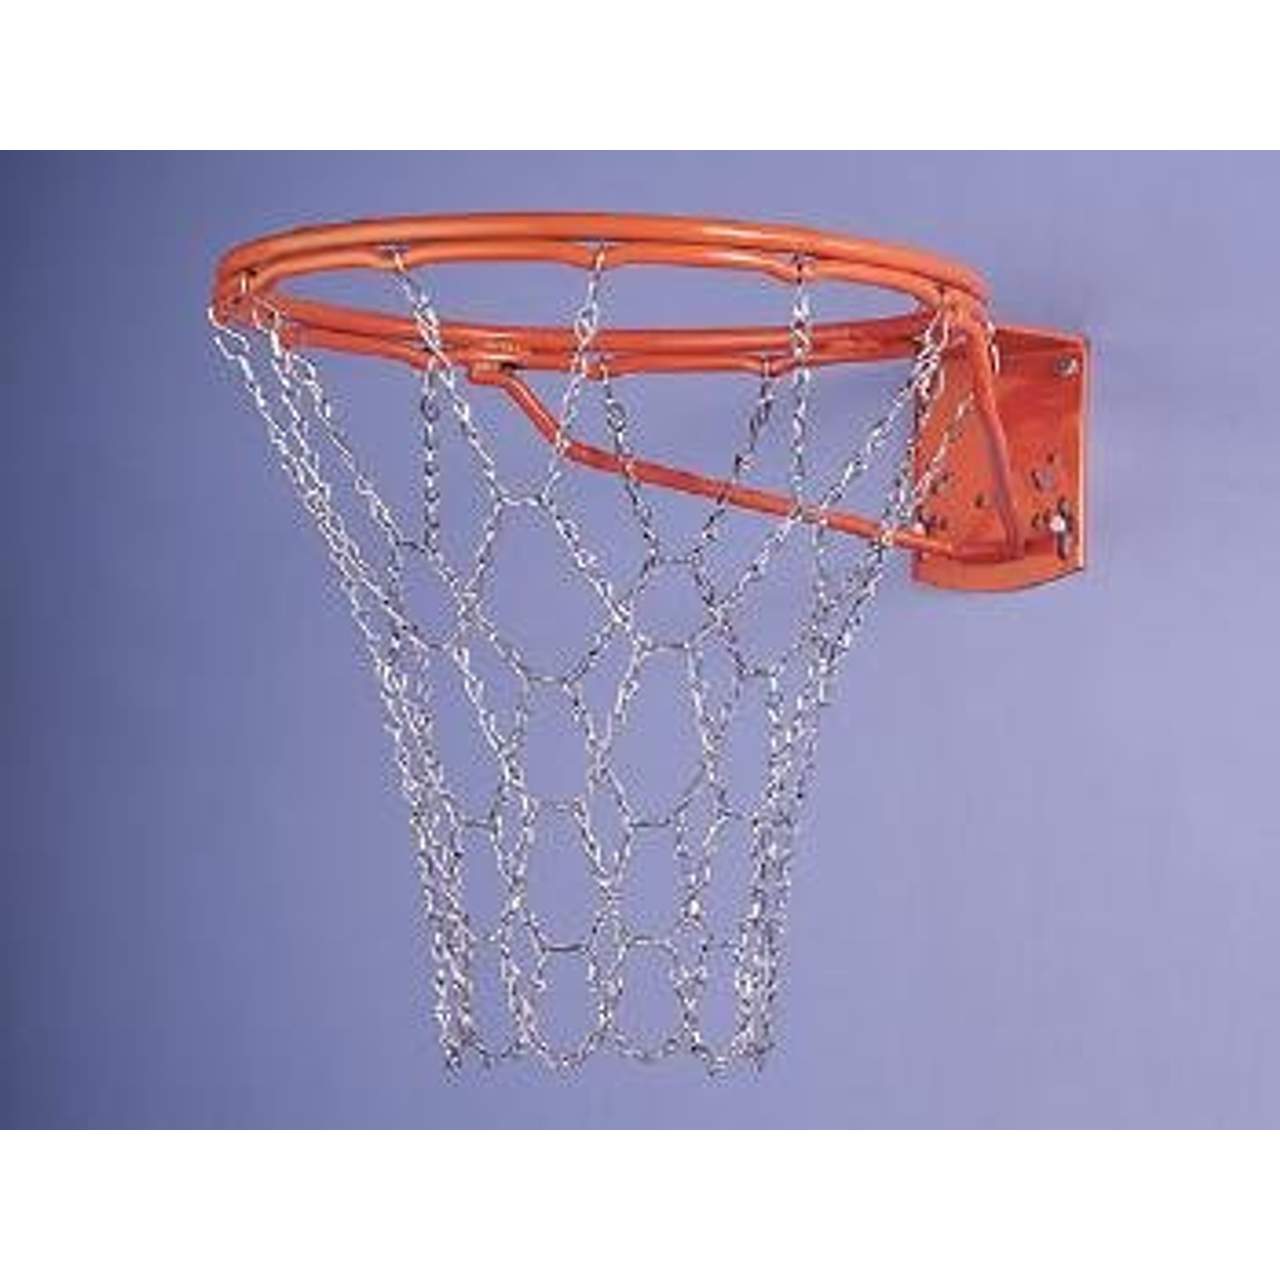 Metall Basketballnetz verzinktes Metallnetz Ketten Netz